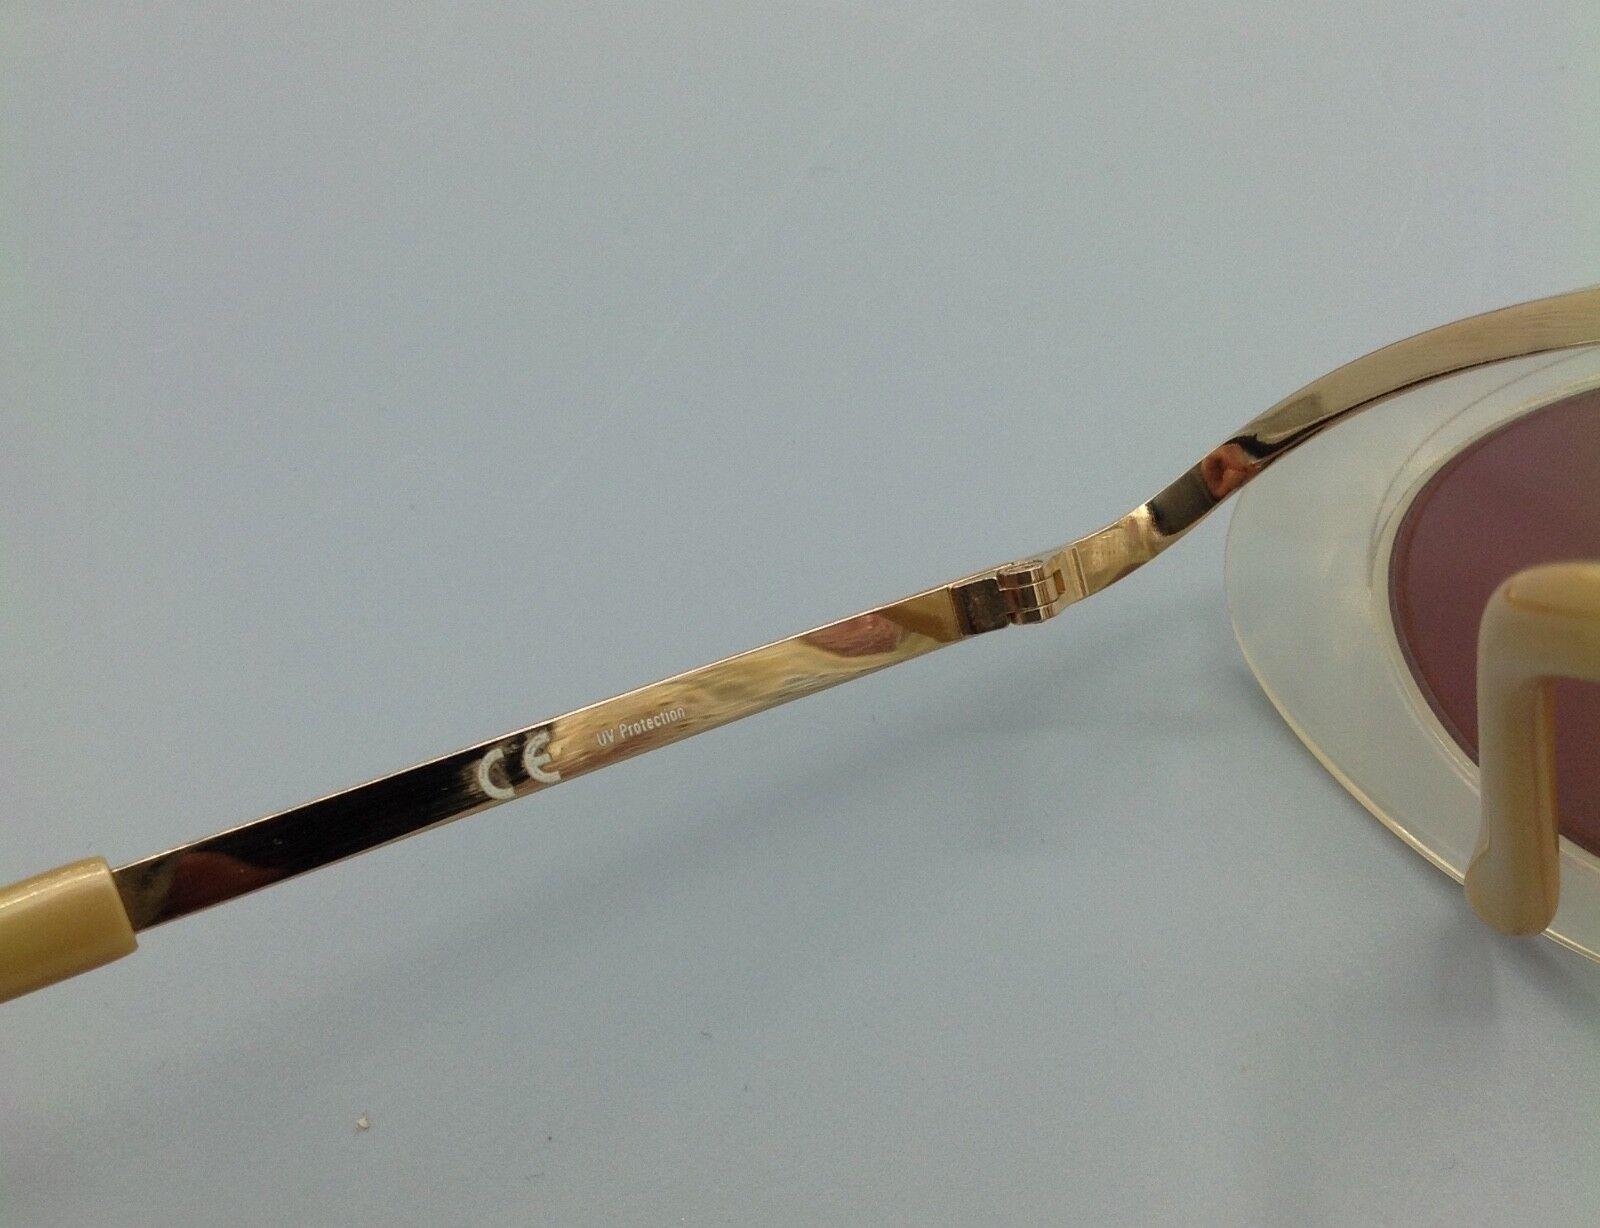 Jean Paul GAULTIER occhiale da sole Sunglasses Lunettes Sonnebrillen Gafas Sol